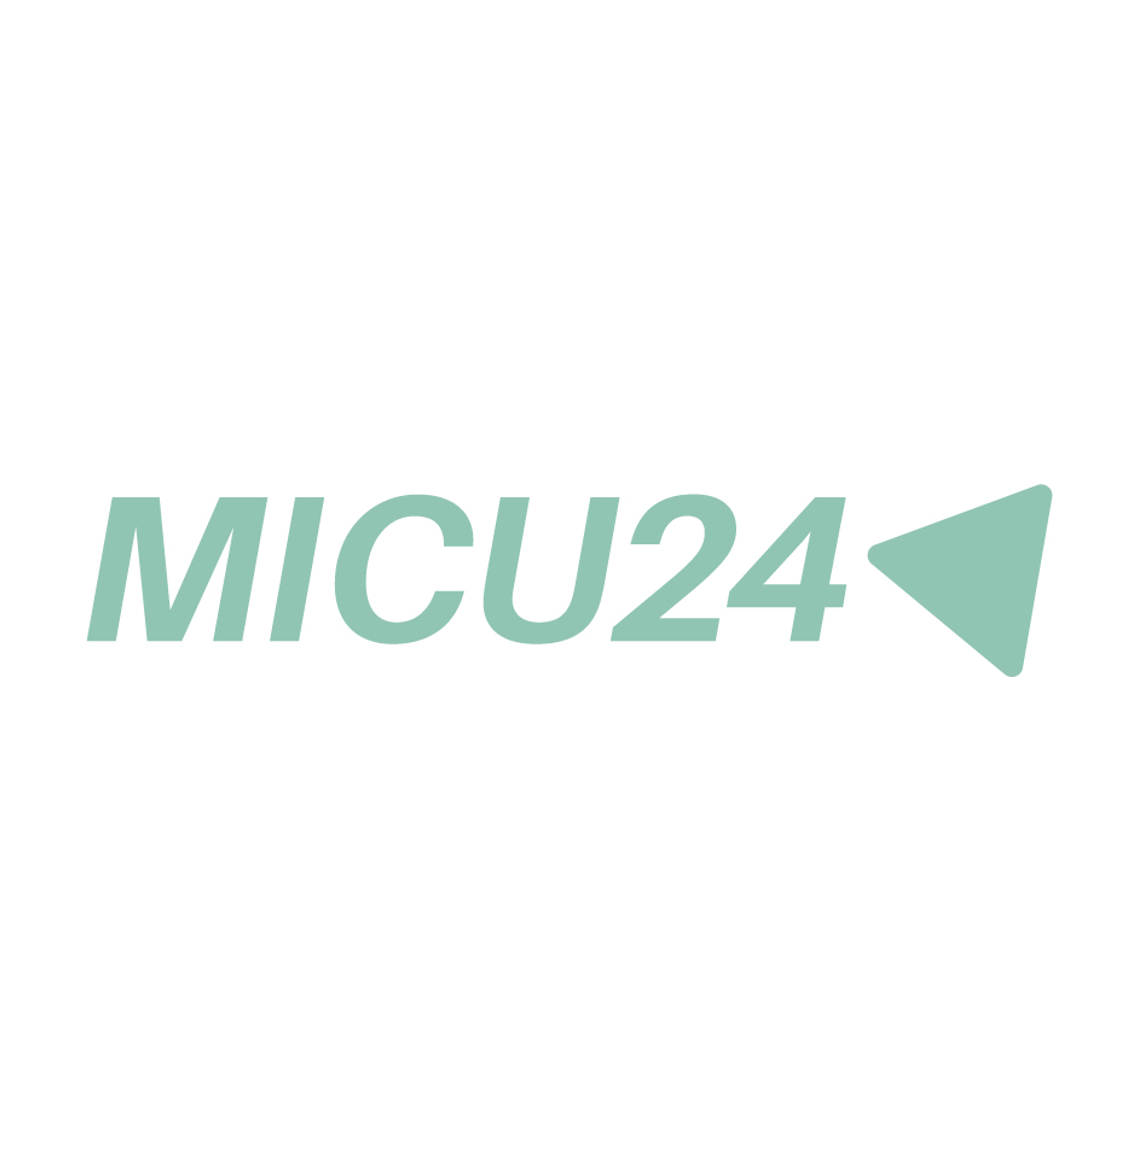 MICU24